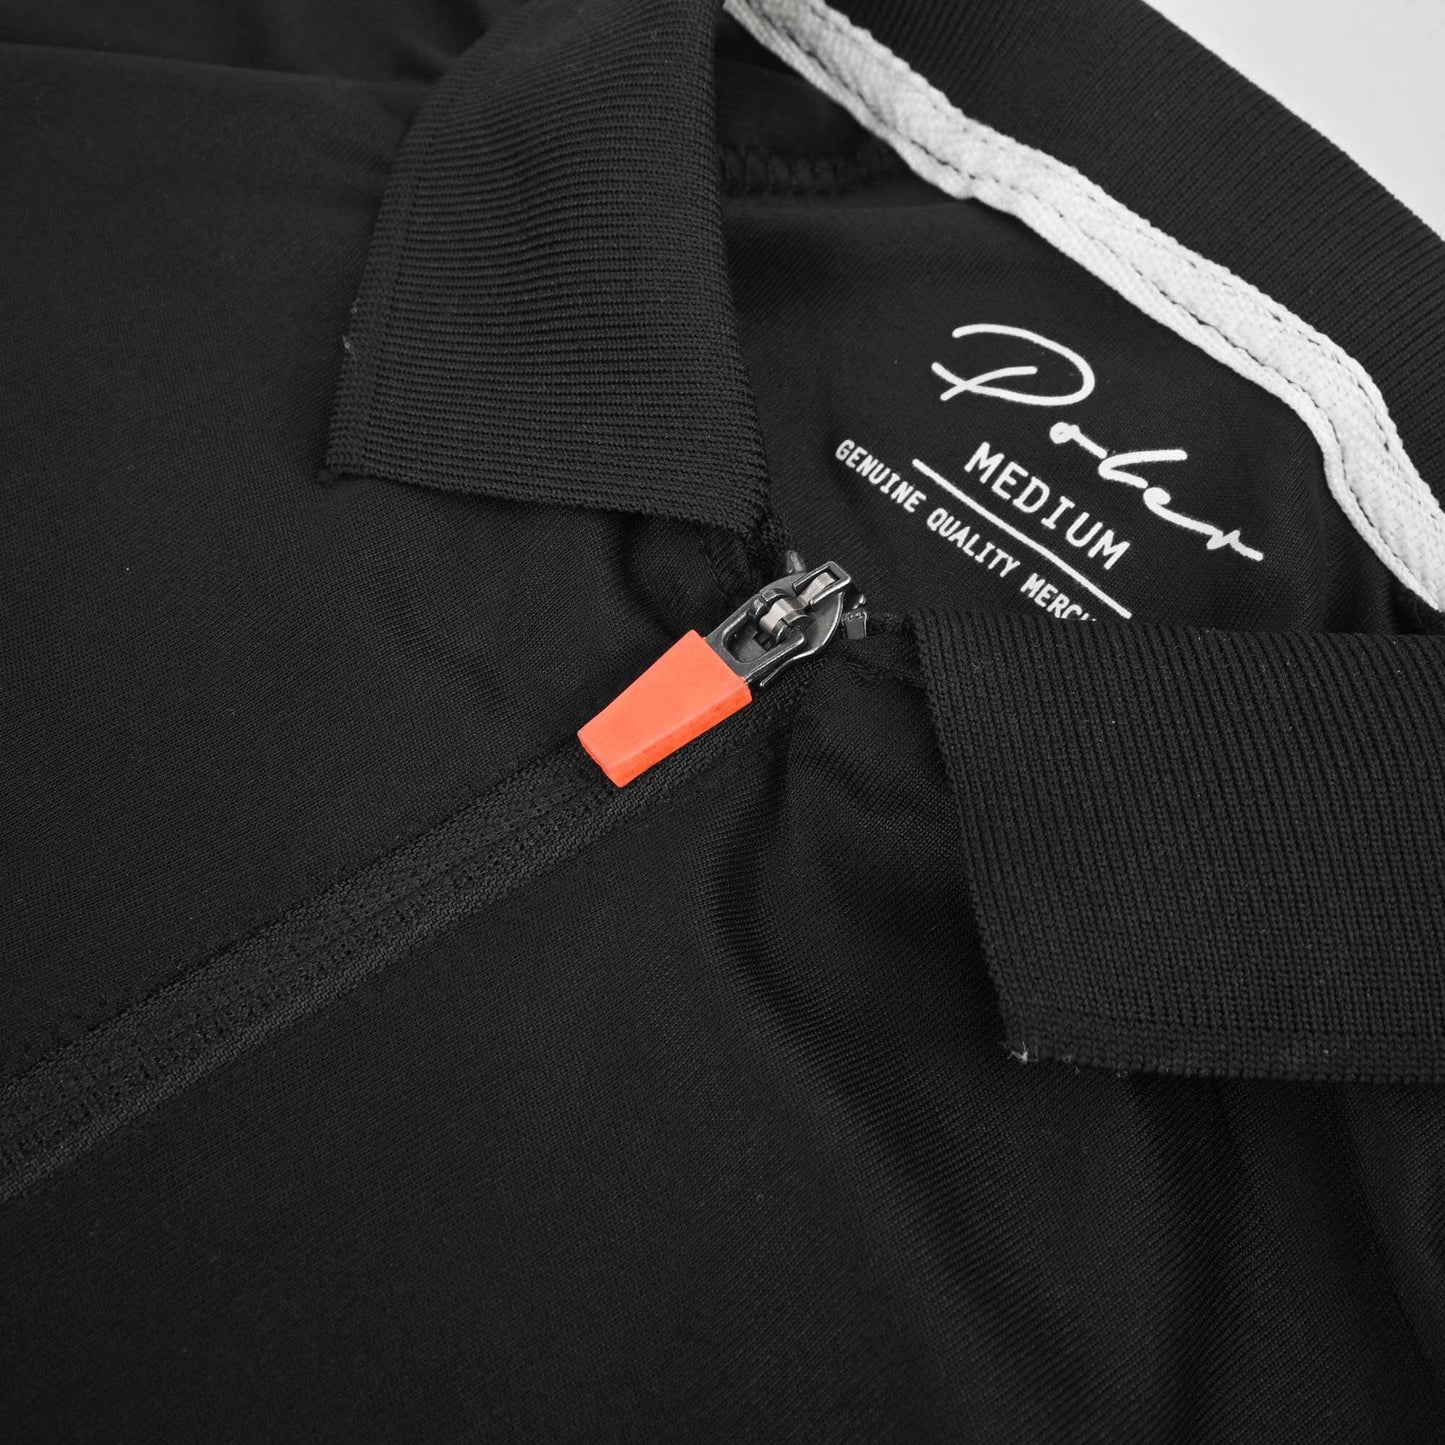 Poler Men's Logo Printed Quarter Zipper Activewear Polo Shirt Men's Polo Shirt IBT 